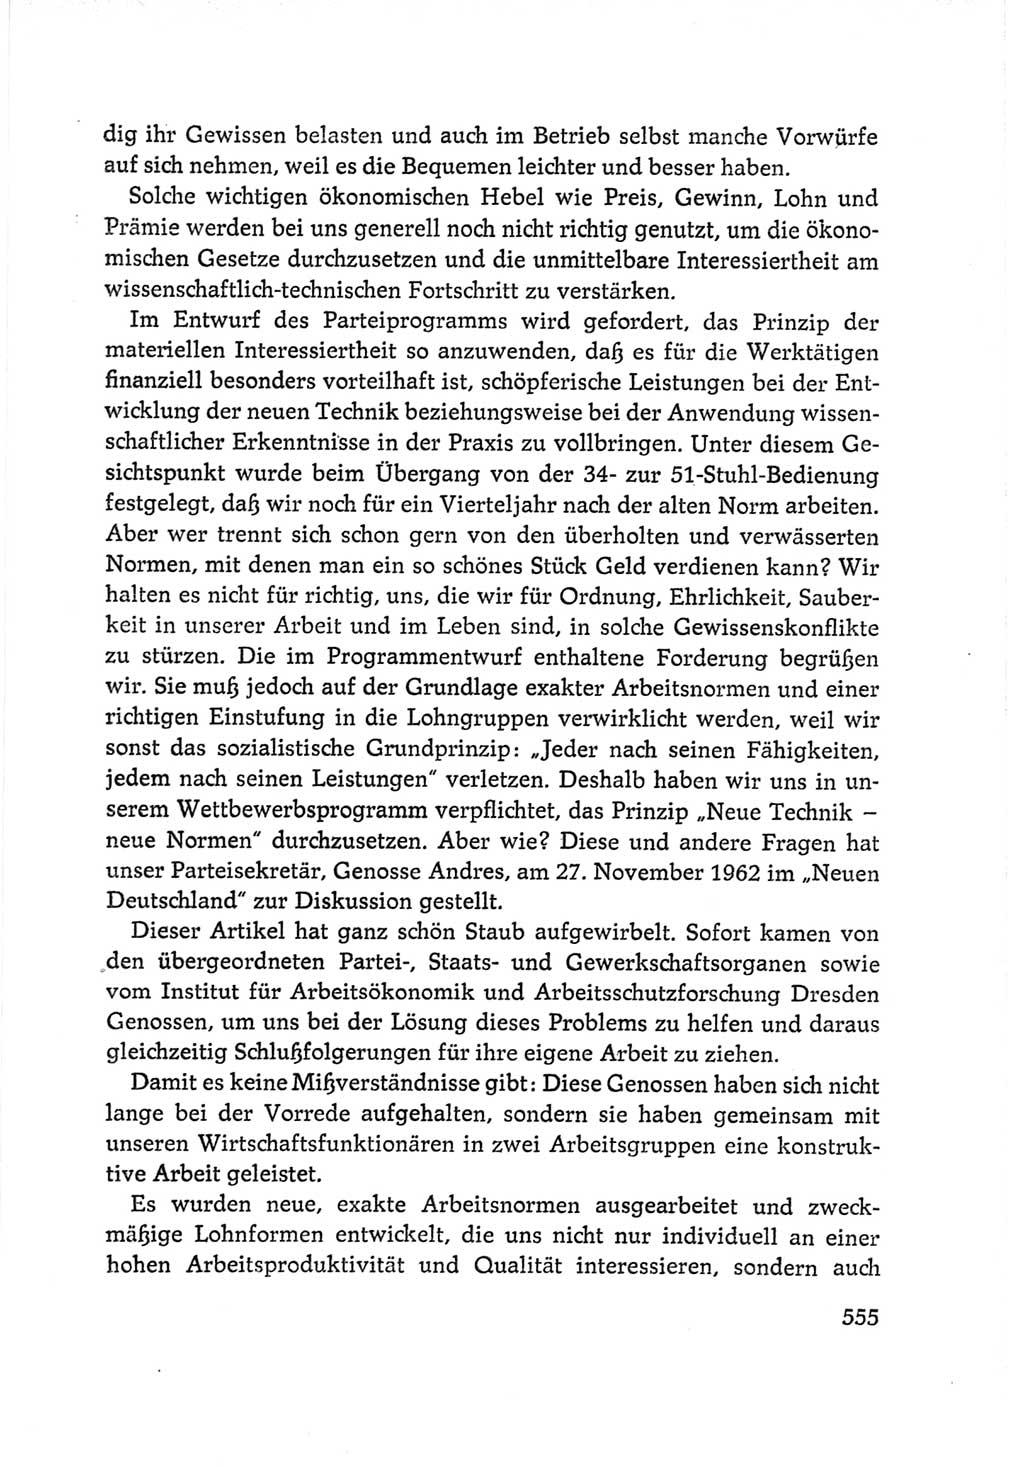 Protokoll der Verhandlungen des Ⅵ. Parteitages der Sozialistischen Einheitspartei Deutschlands (SED) [Deutsche Demokratische Republik (DDR)] 1963, Band Ⅰ, Seite 555 (Prot. Verh. Ⅵ. PT SED DDR 1963, Bd. Ⅰ, S. 555)